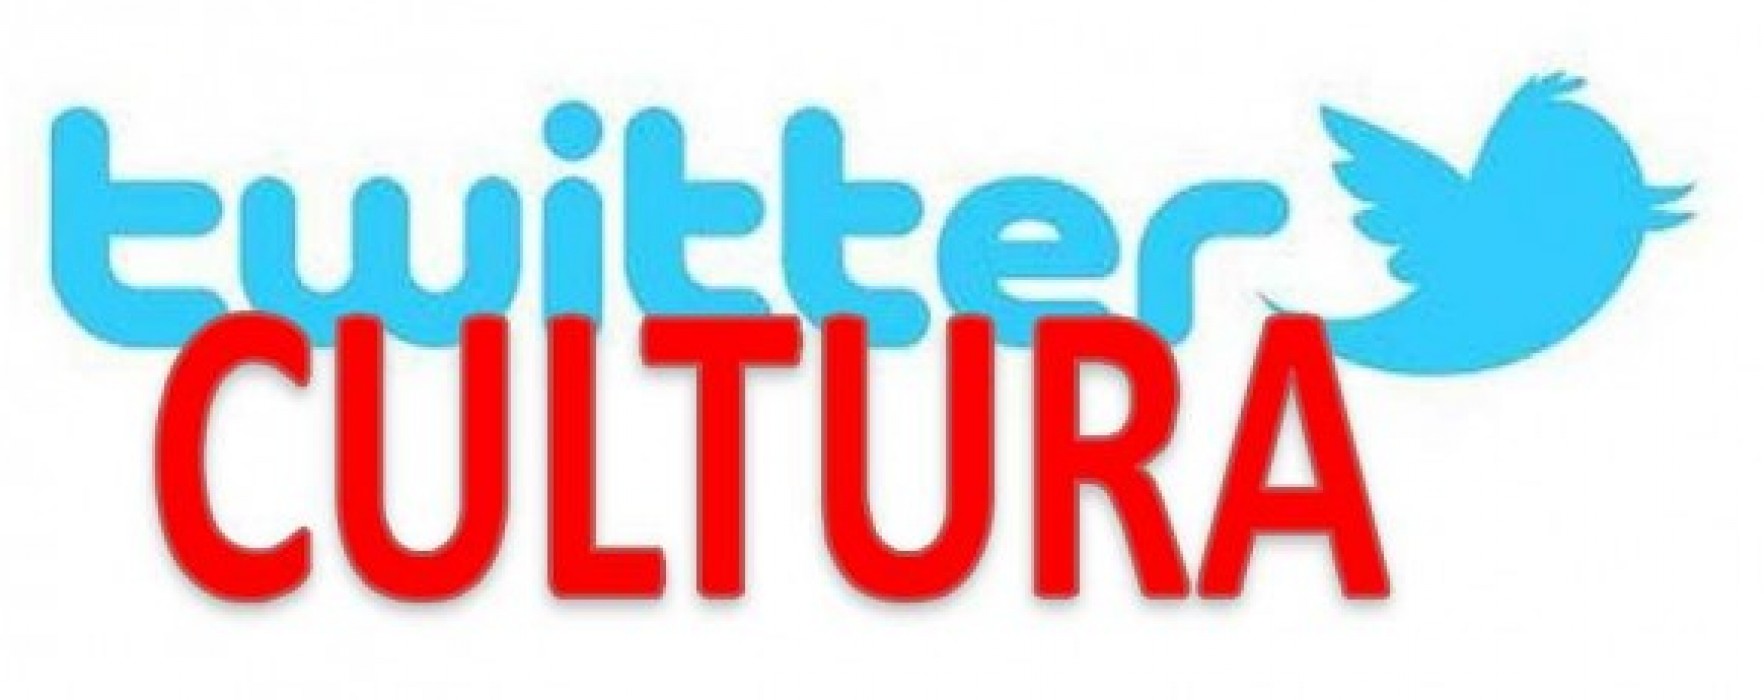 Twitter, tra libri e filosofia. La cultura è sempre più social.